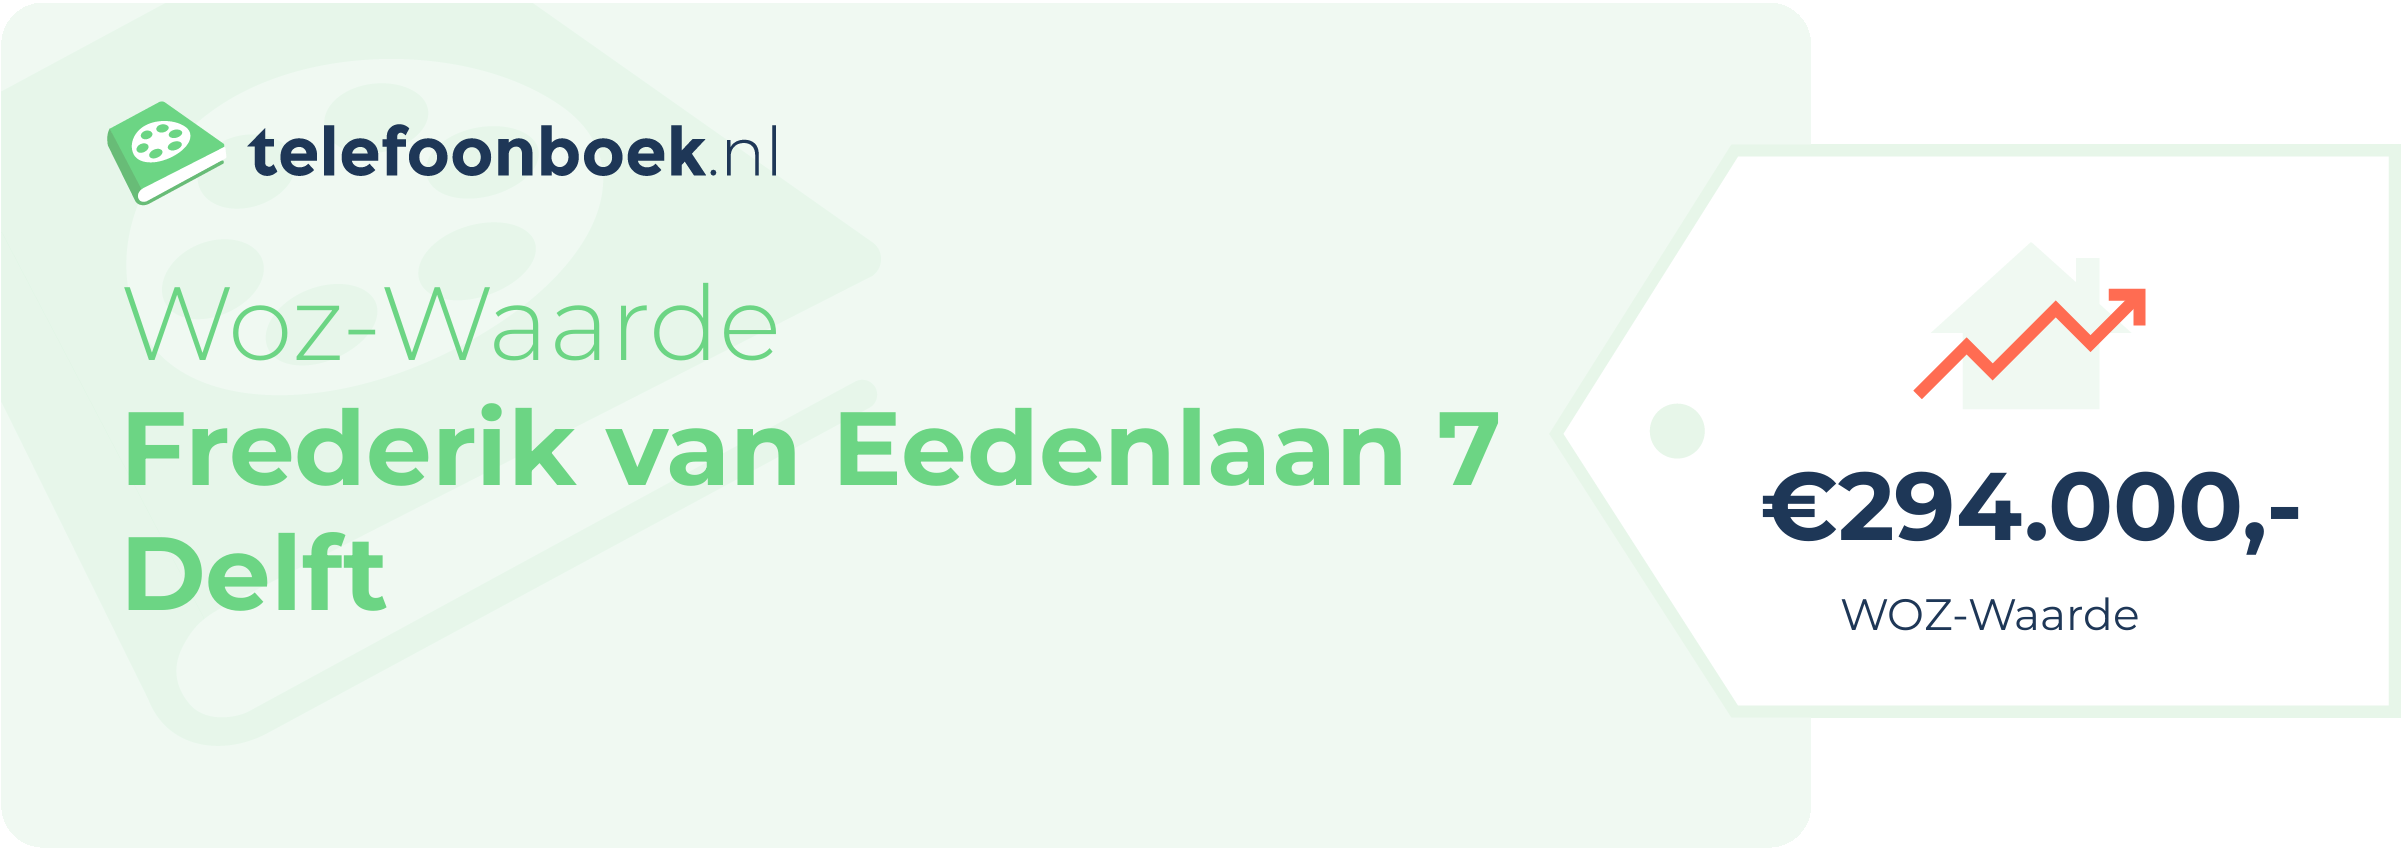 WOZ-waarde Frederik Van Eedenlaan 7 Delft